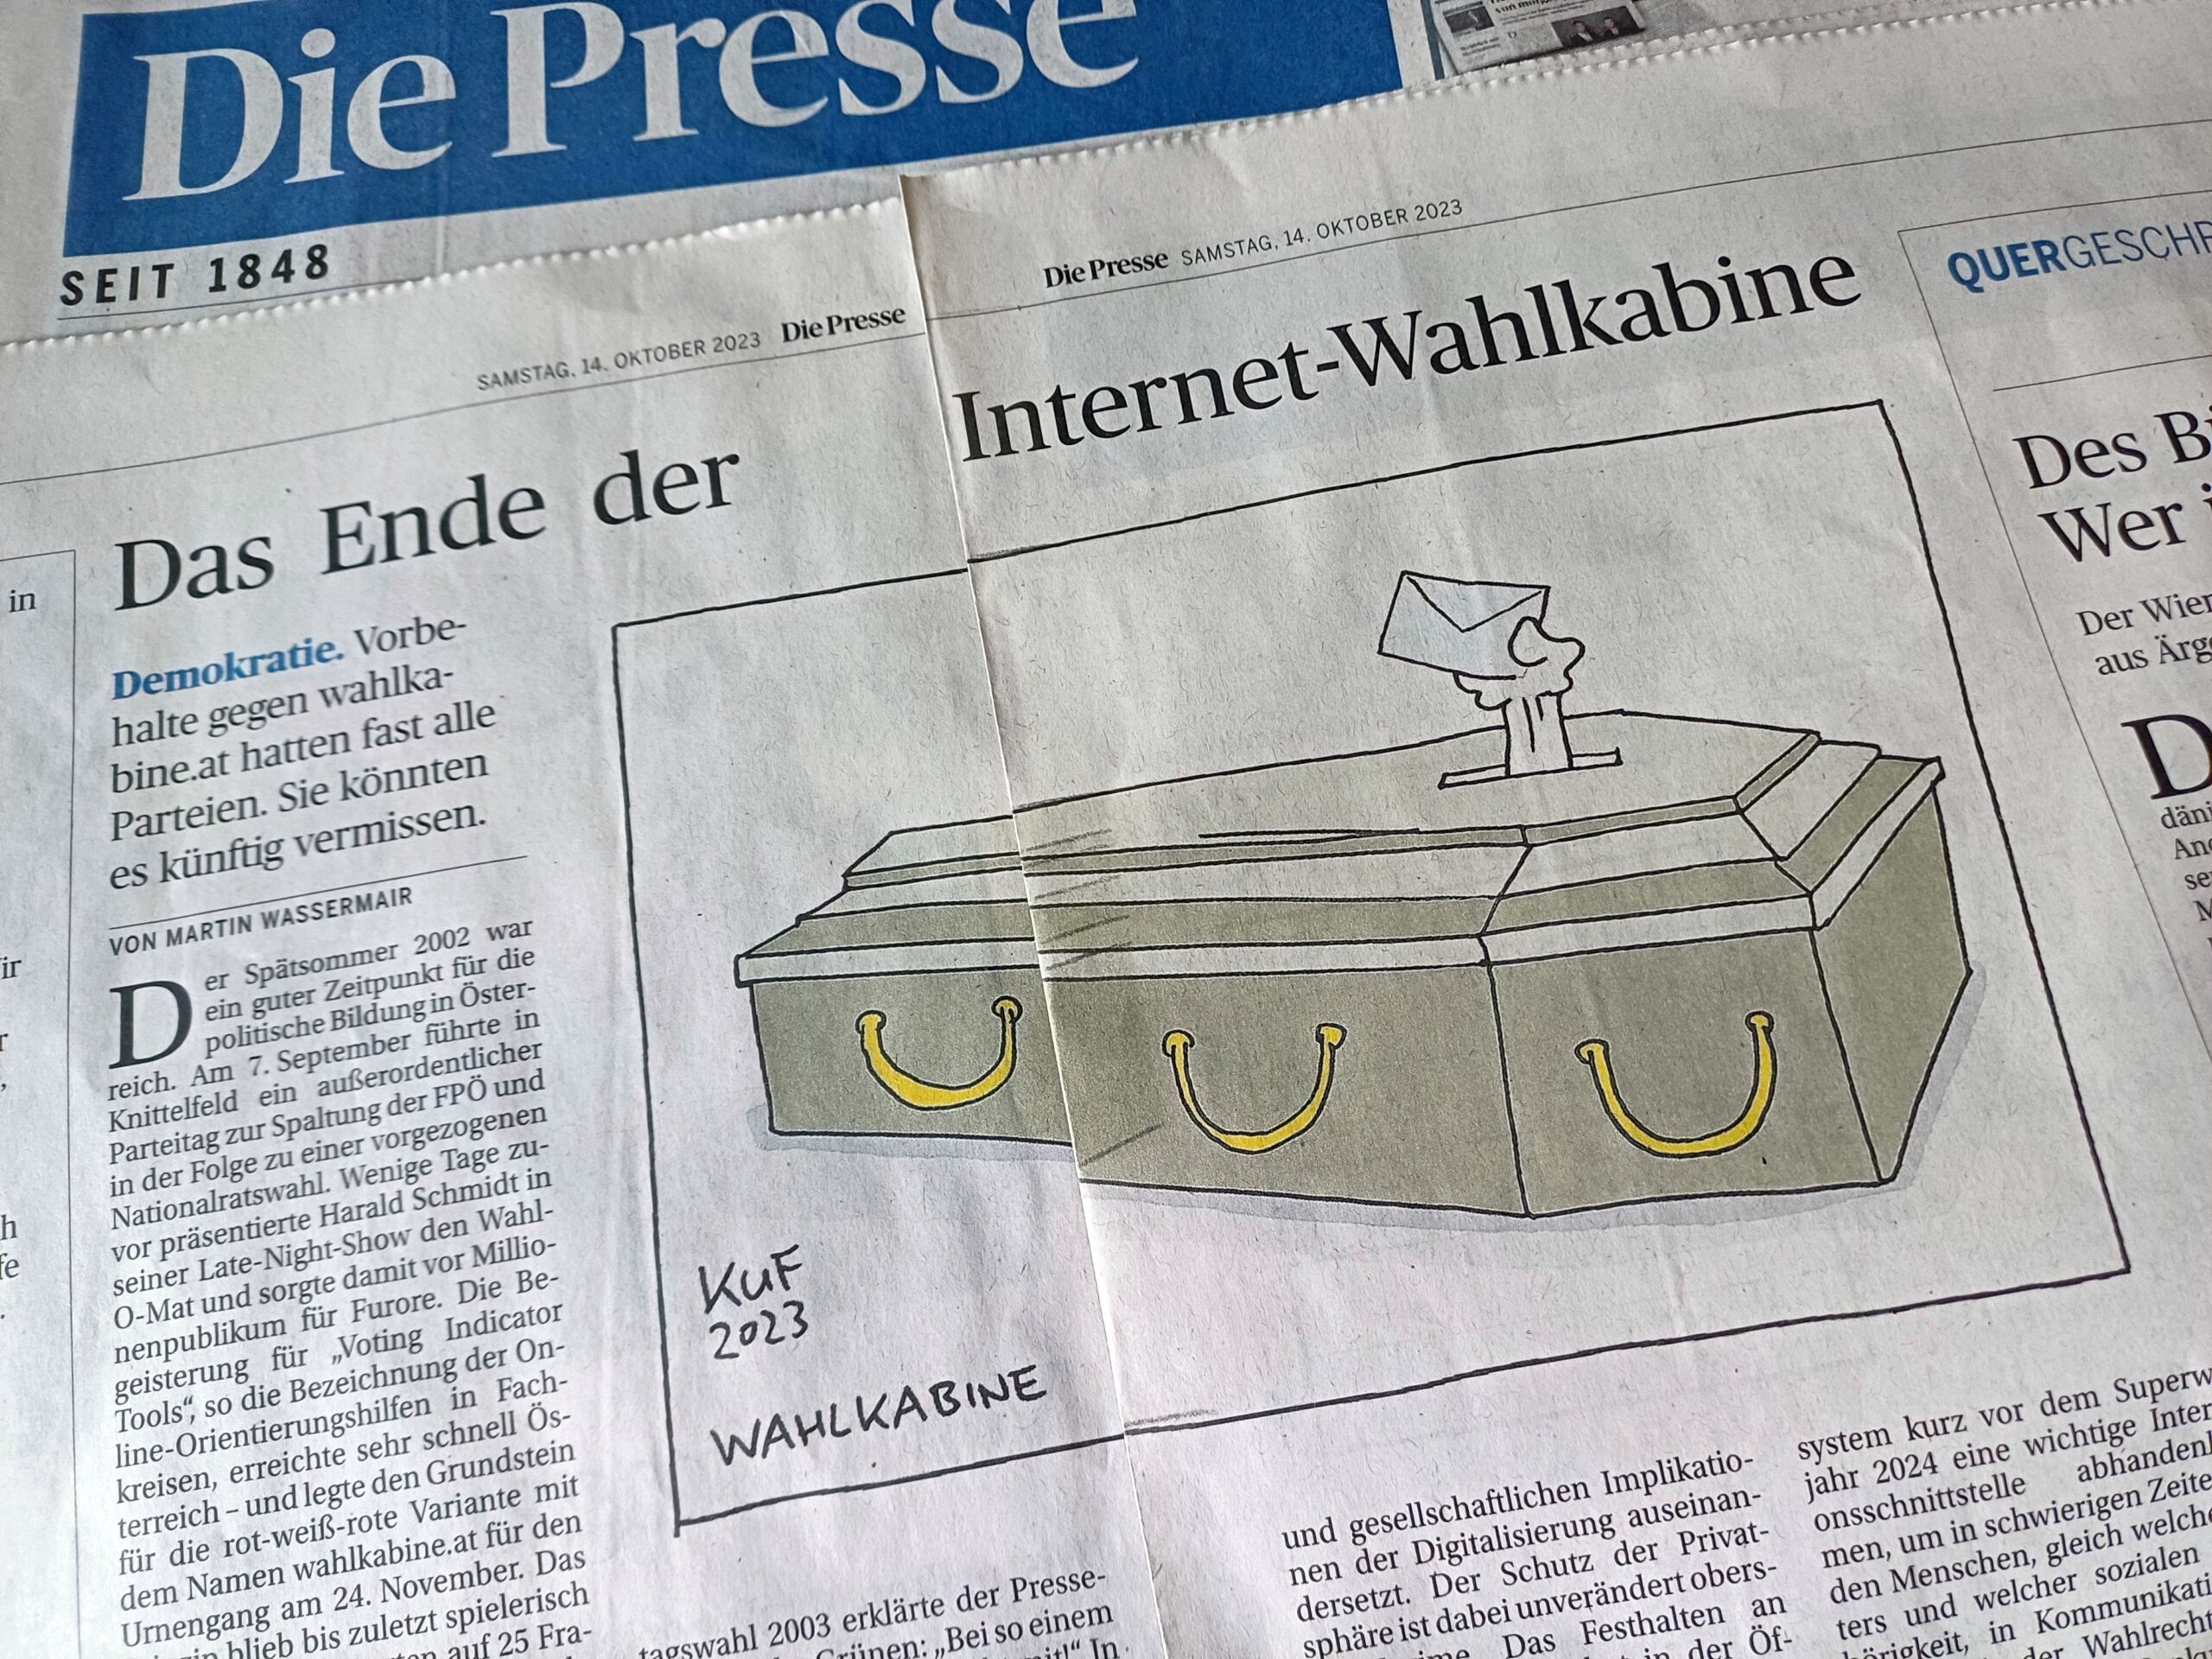 Internet-Wahlkabine: Eine Entblößung der österreichischen Parteiendemokratie